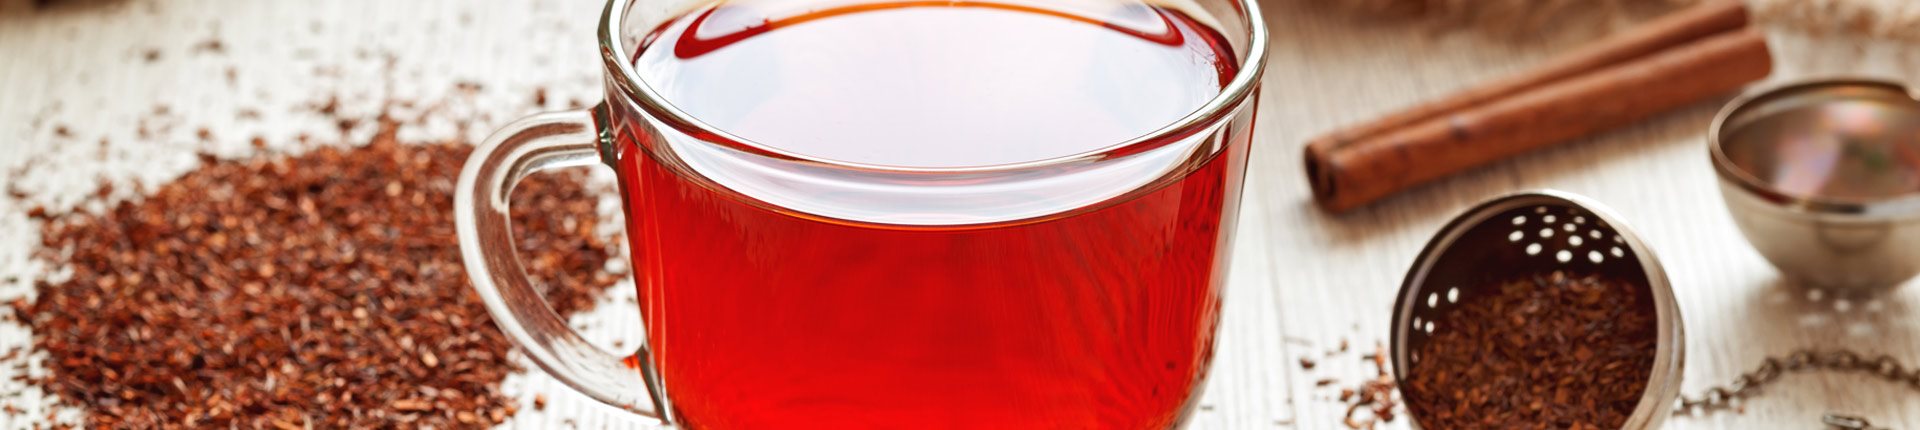 Rooibos - korzyści zdrowotne. Co daje picie czerwonej herbaty?